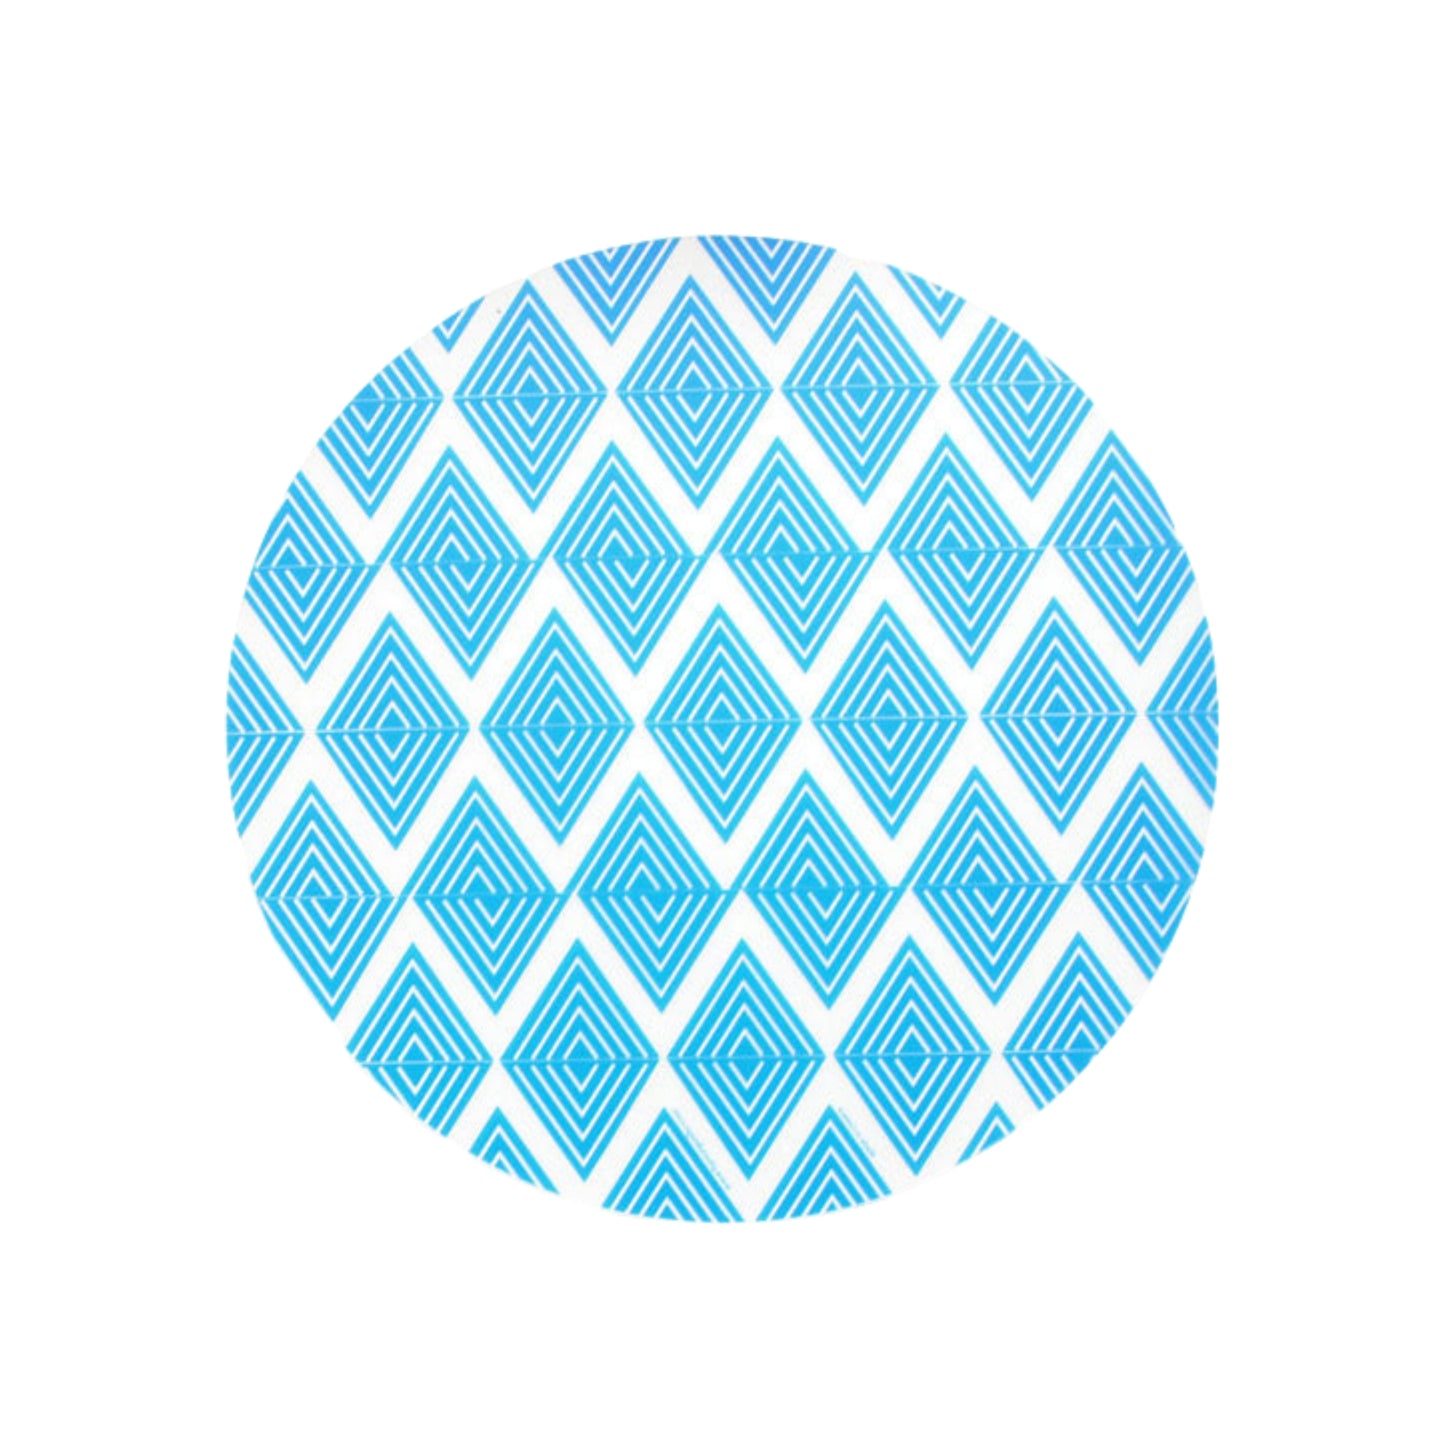 Placemat Blue Labyrinth design - 35cm diameter